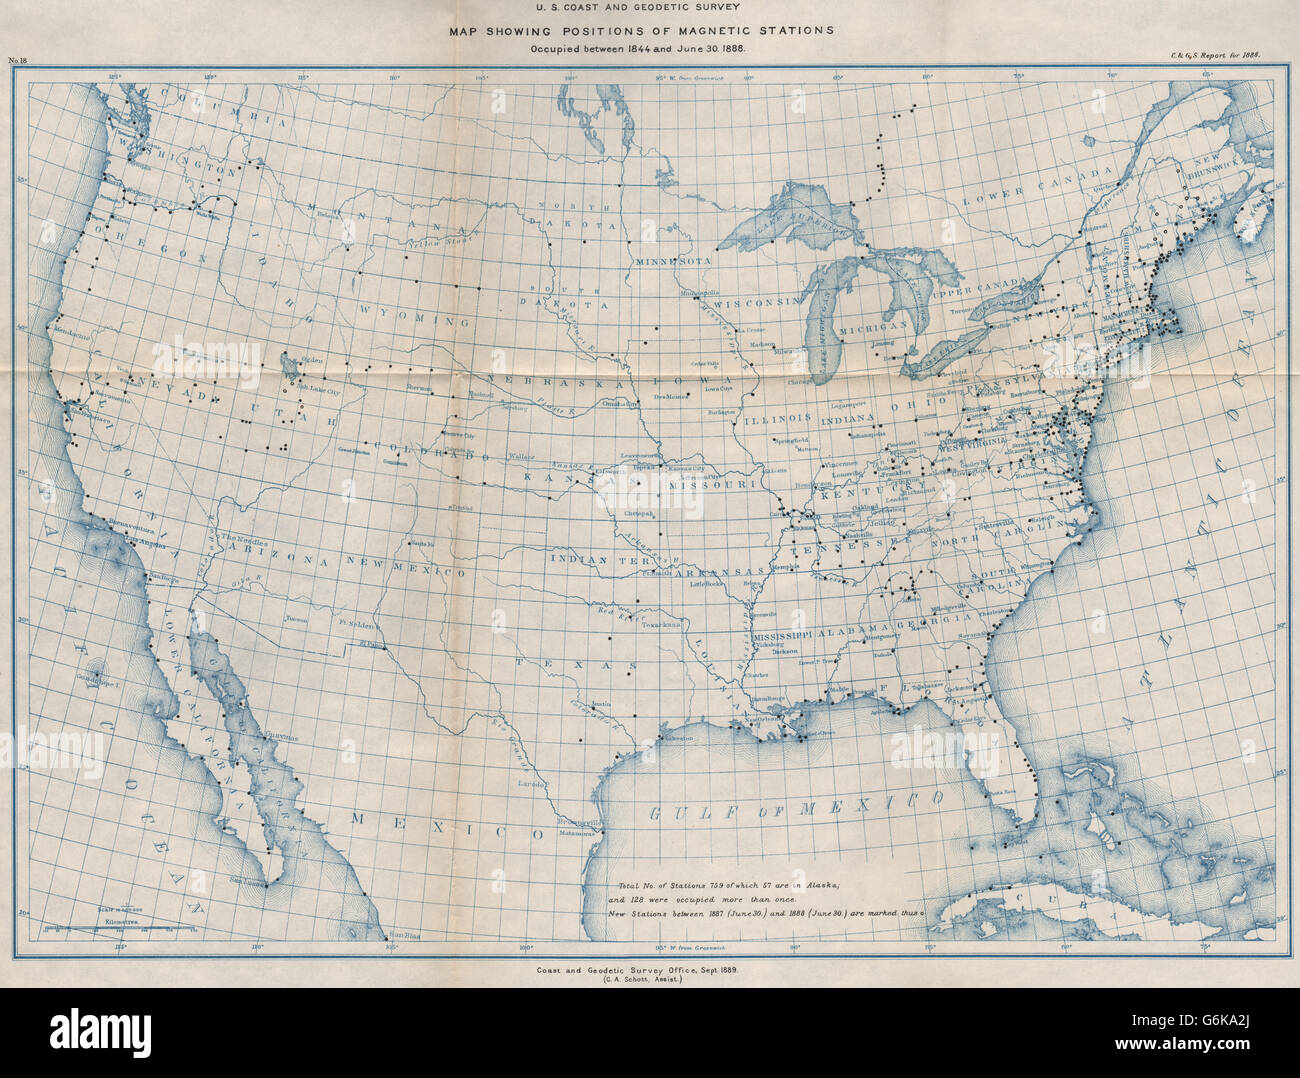 USA: Magnetische Untersuchung Stationen. USCGS, 1889 Antike Landkarte Stockfoto